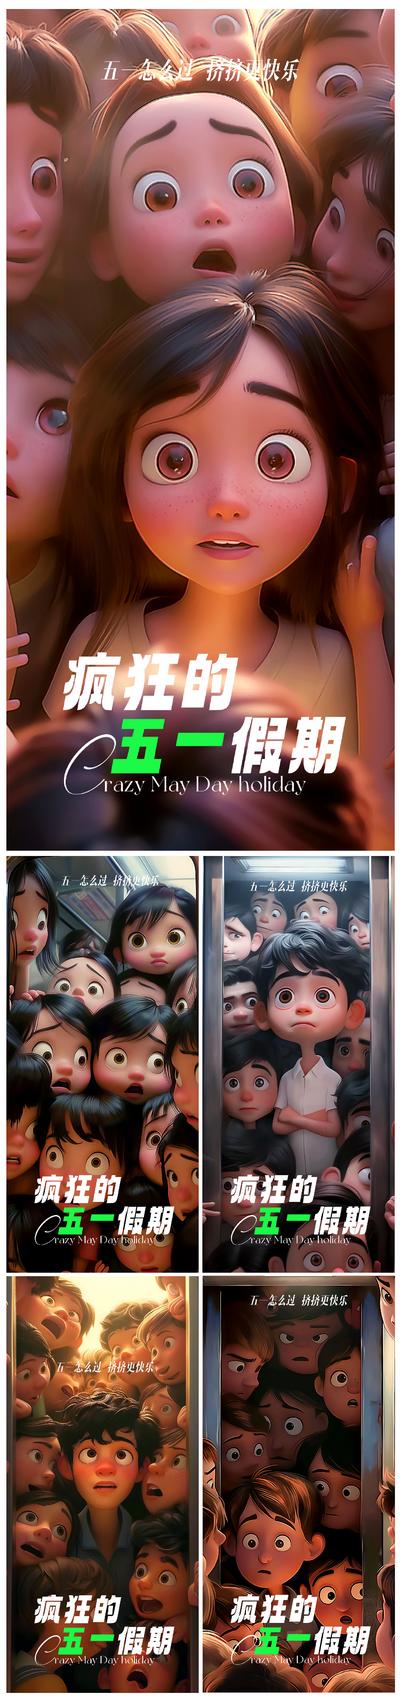 南门网 广告 海报 系列 劳动节 公历节日 五一 出游 户外 儿童 卡通 挤地铁 拥挤 c4d